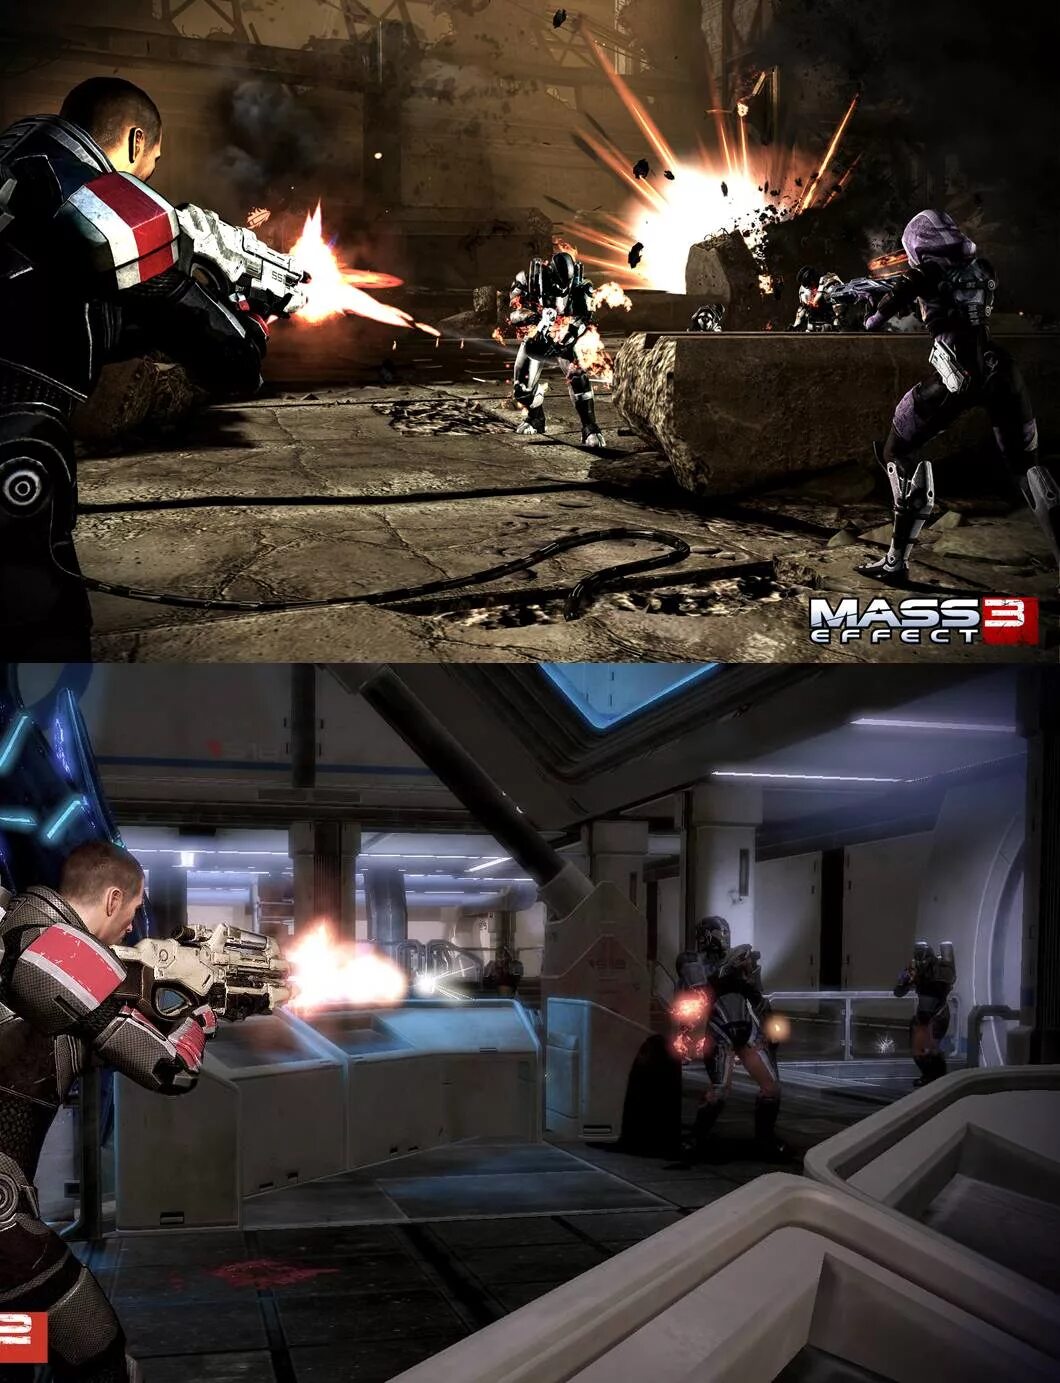 Mass Effect 2 Скриншоты. Mass Effect 3 Скриншоты. Масс эффект 3 движок. Масс эффект 1 Скриншоты. Двое против 3